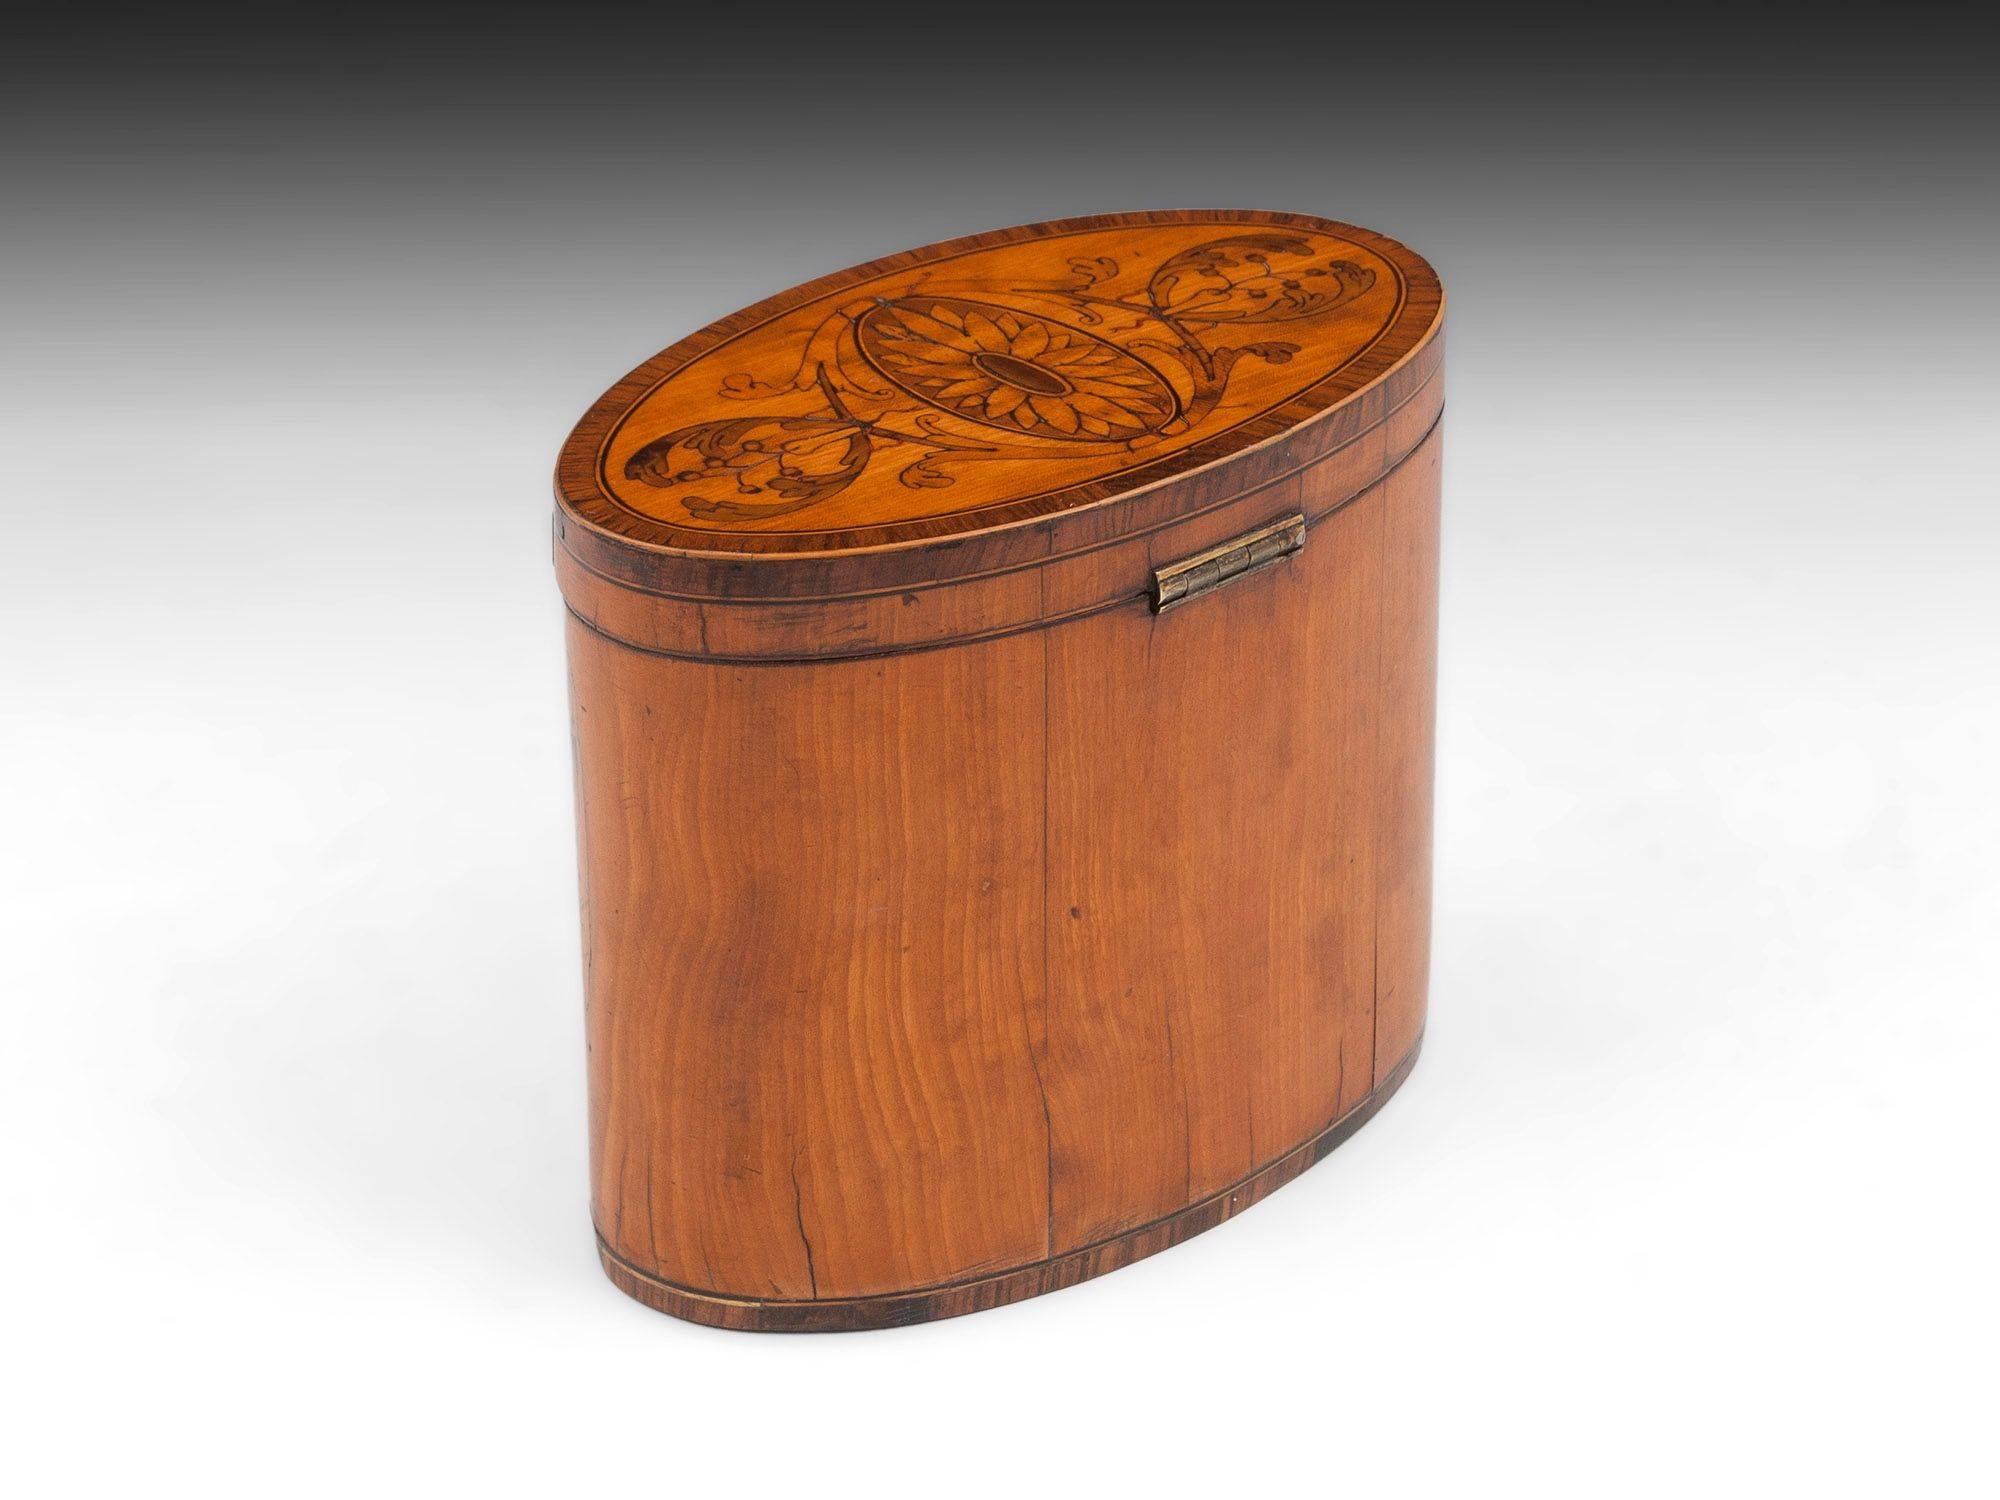 English George III Period 18th Century Sheraton Satinwood Inlaid Oval Tea Caddy